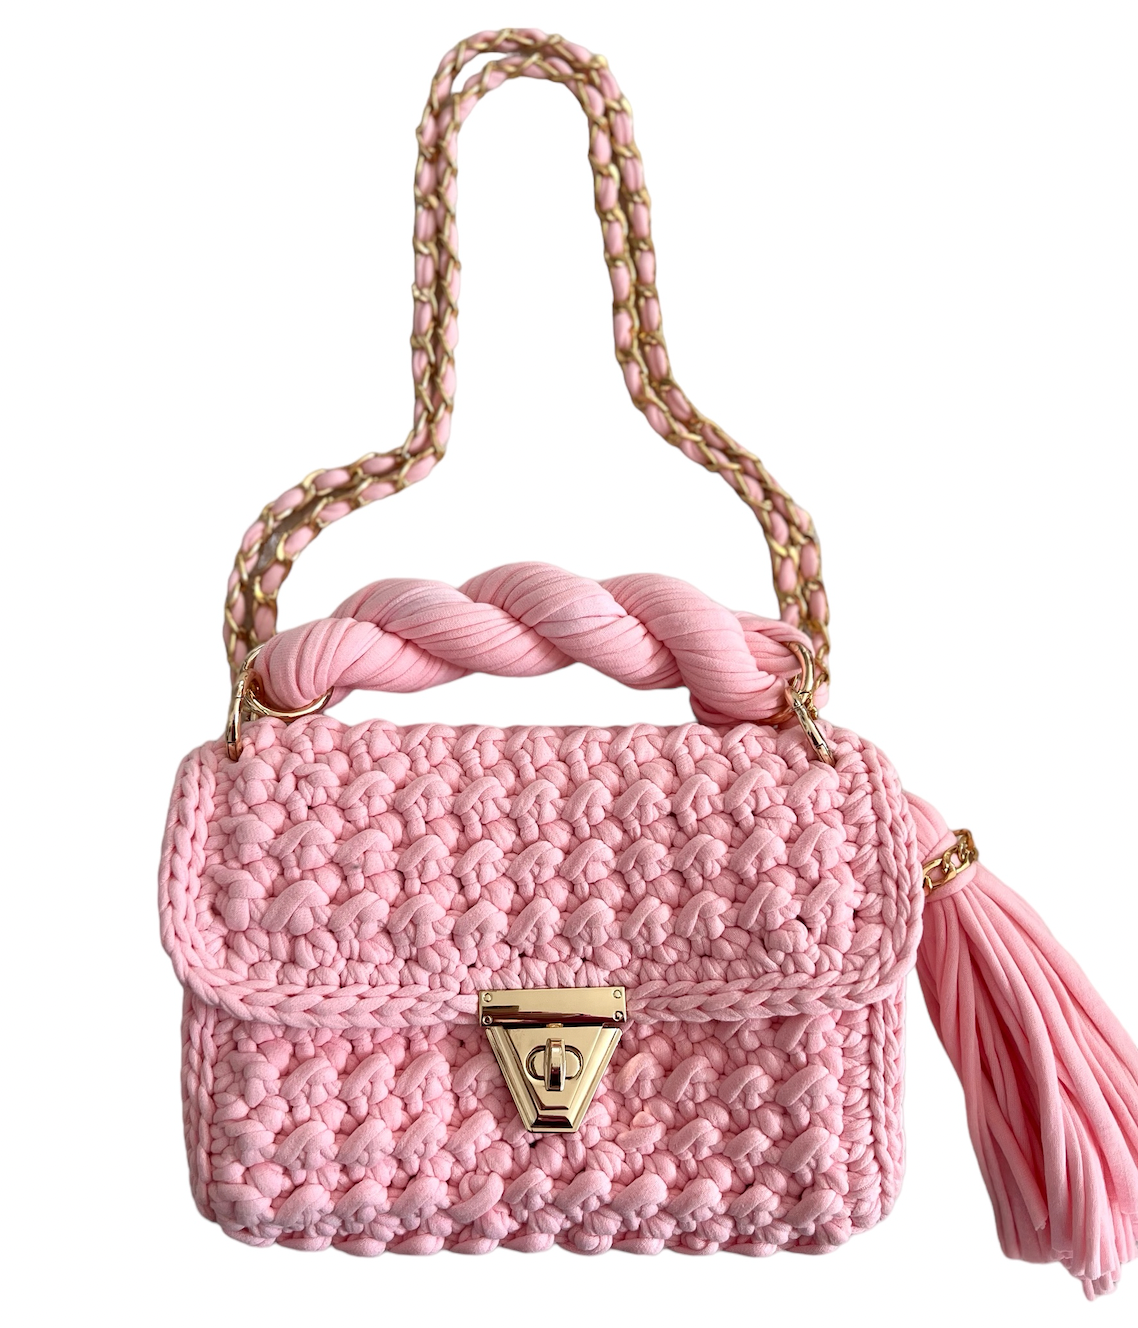 Archiella Knitted Handbag @Port de Sôller Gold